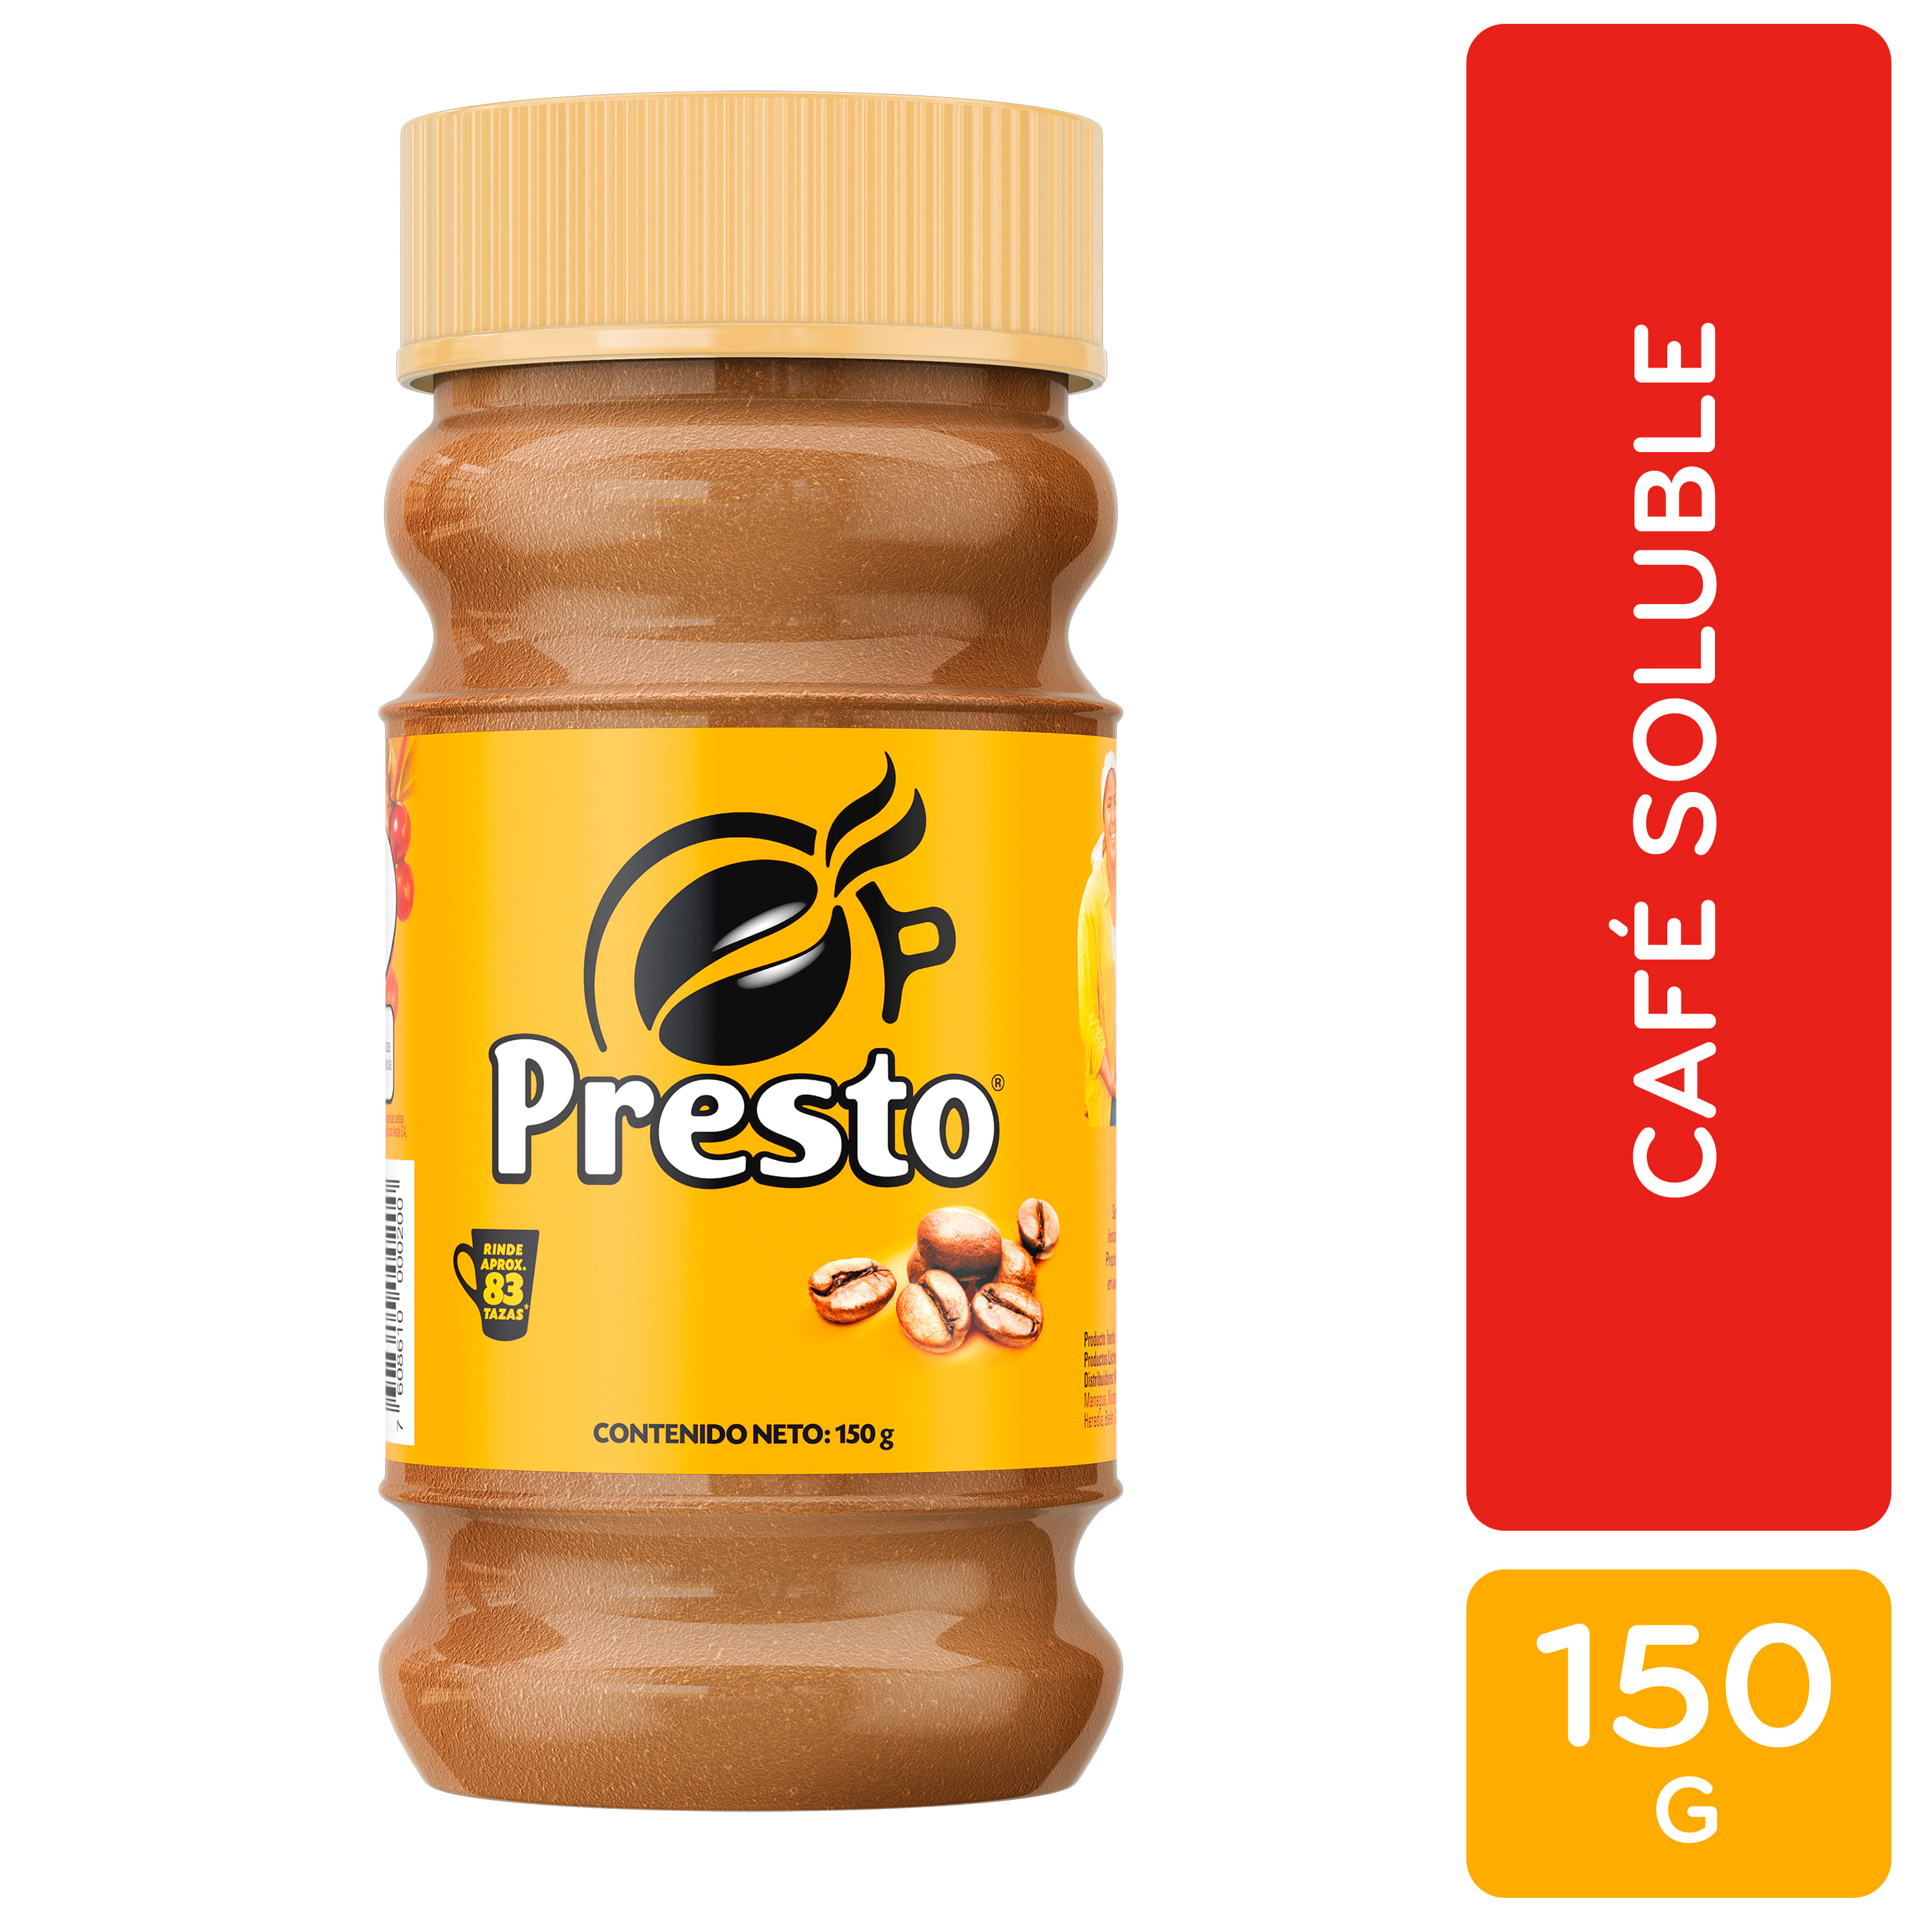 Caf-Instant-neo-Presto-Frasco-150gr-1-12575